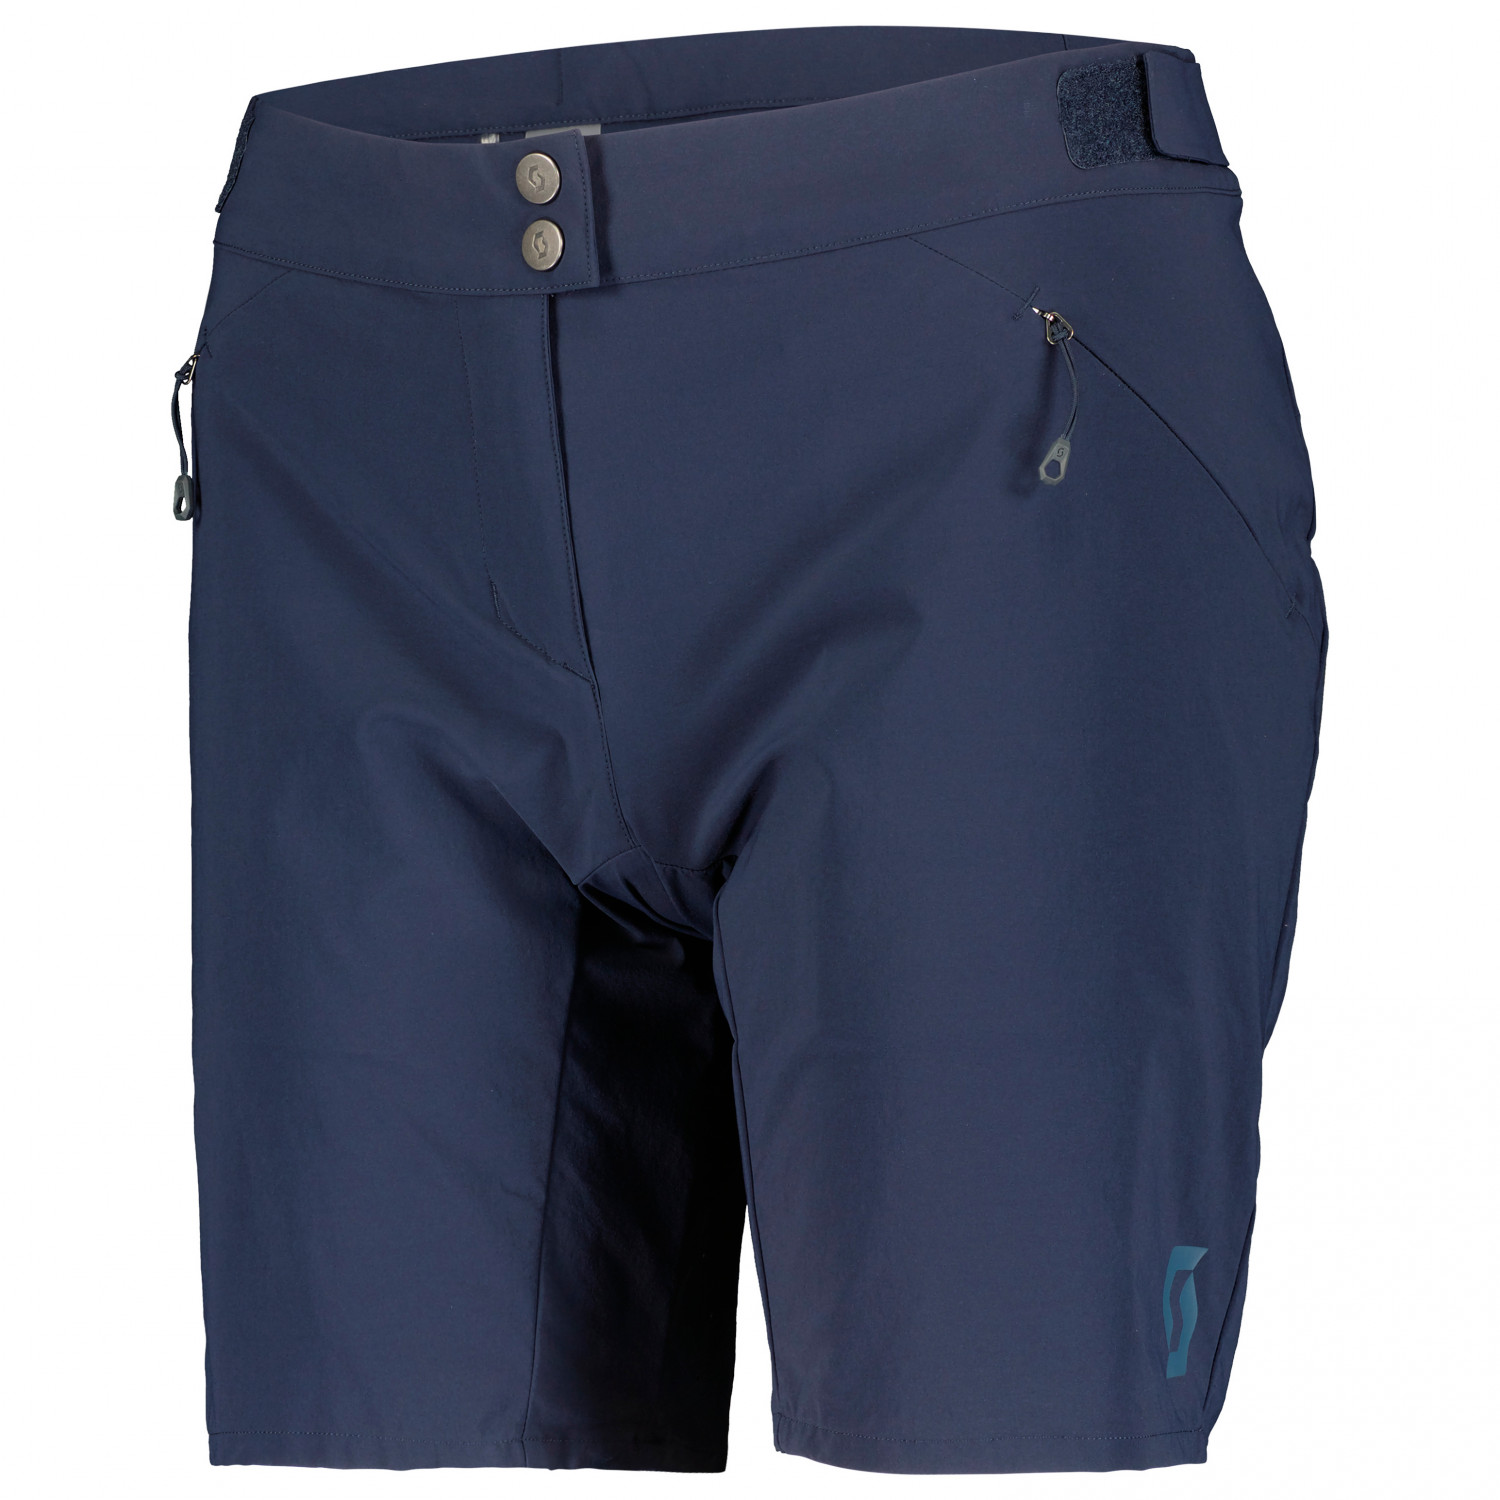 Велосипедные шорты Scott Women's Shorts Endurance Loose Fit with Pad, темно синий